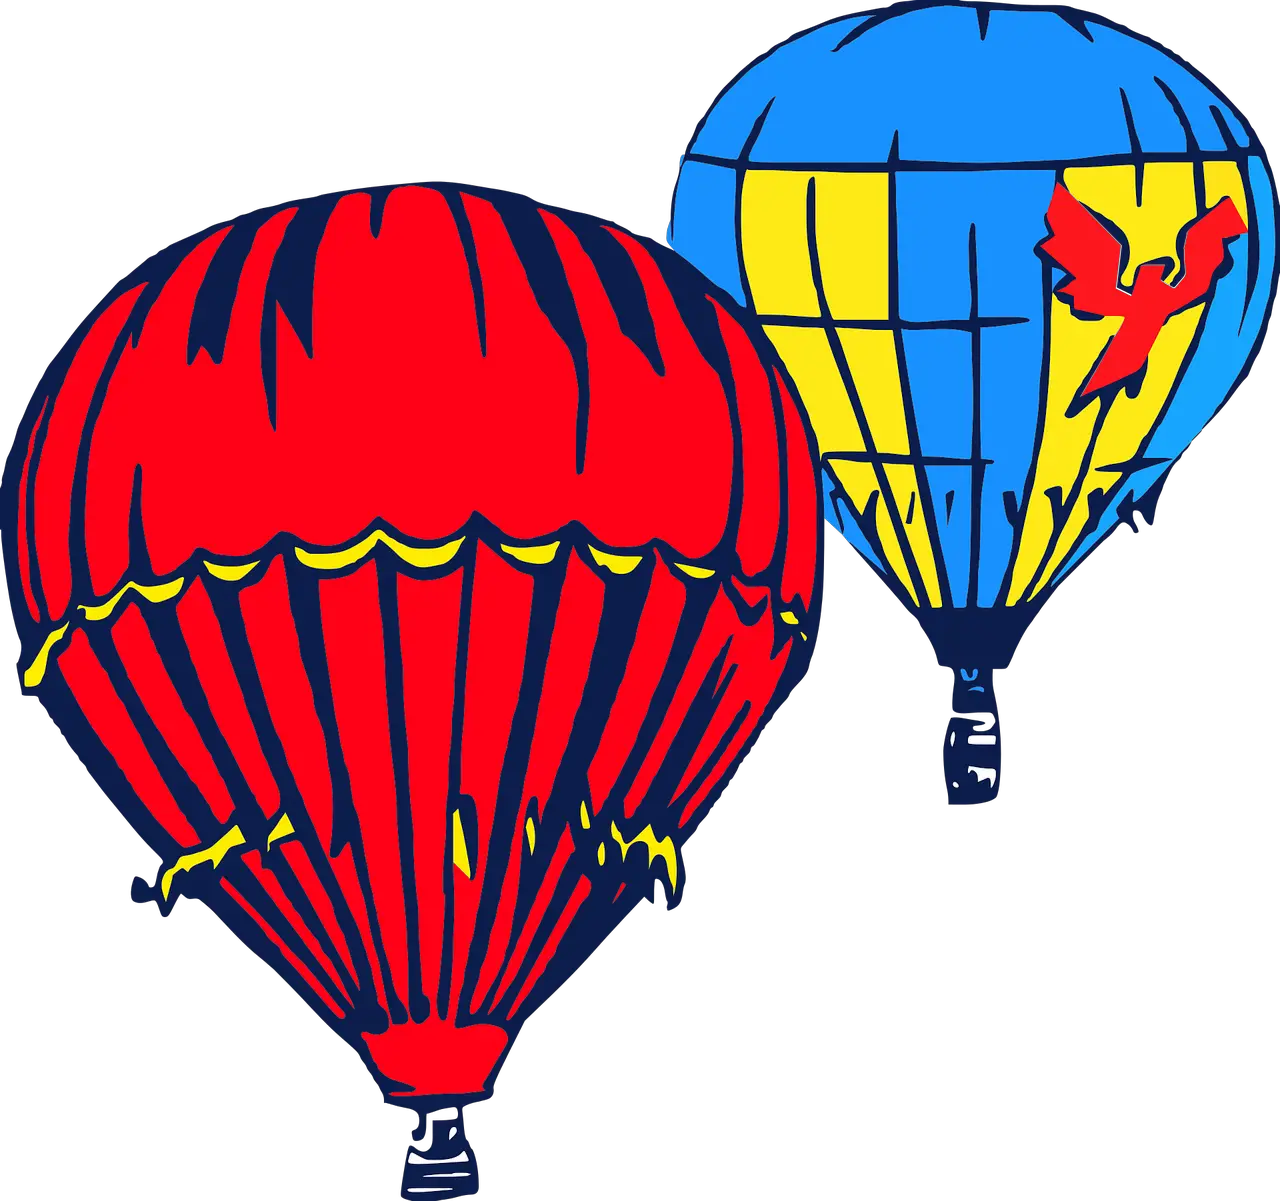 Per què els globus aerostàtics se sostenen a l'aire?